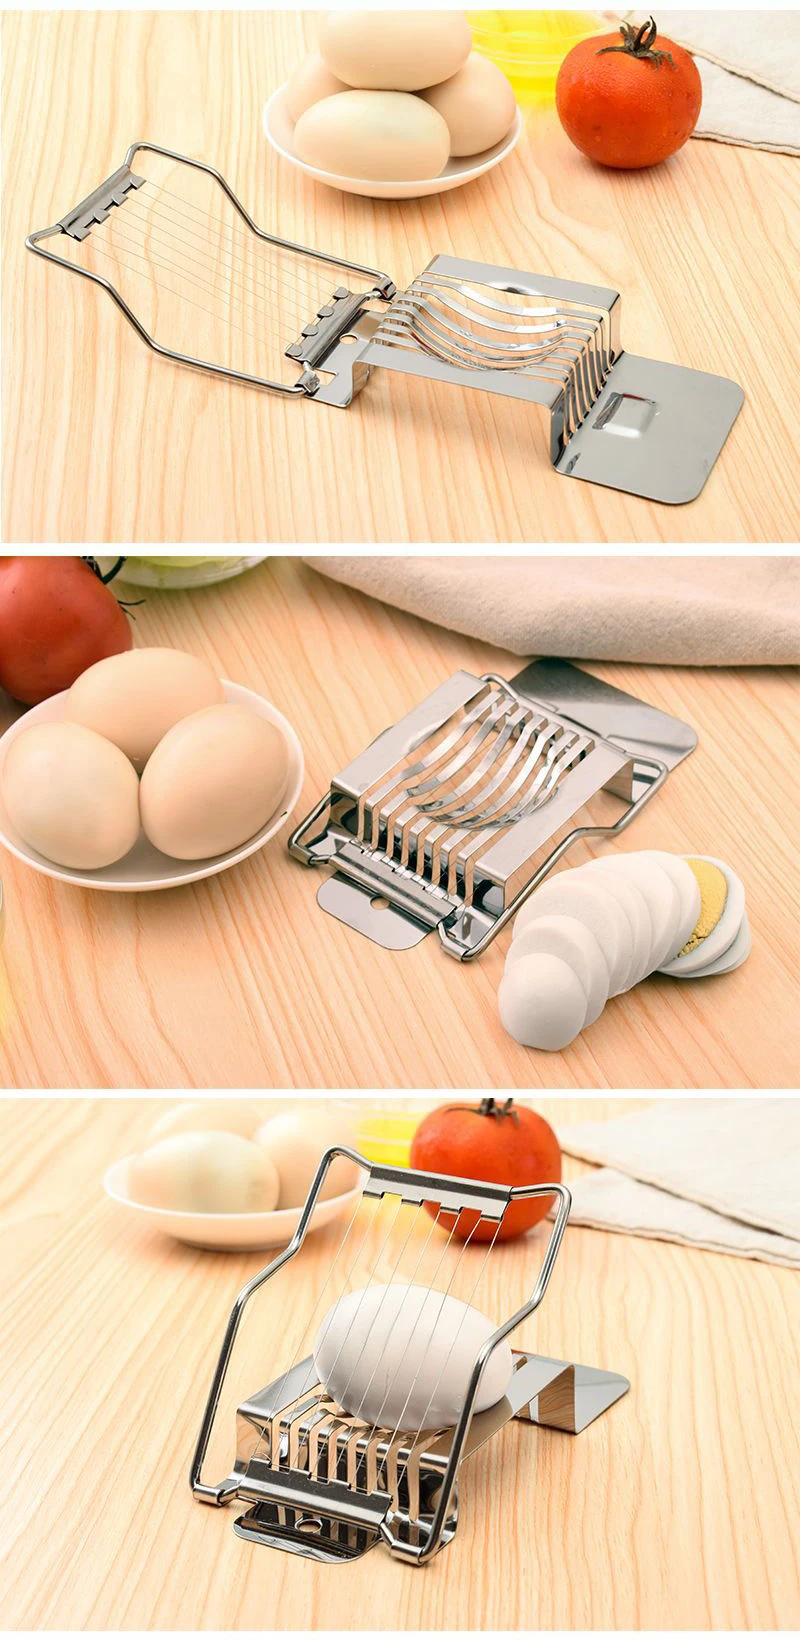 UPORS Яйцерезка нержавеющая сталь раздел резак творческий нож для яиц в мешочек гриб томатный кухонная принадлежность для резки